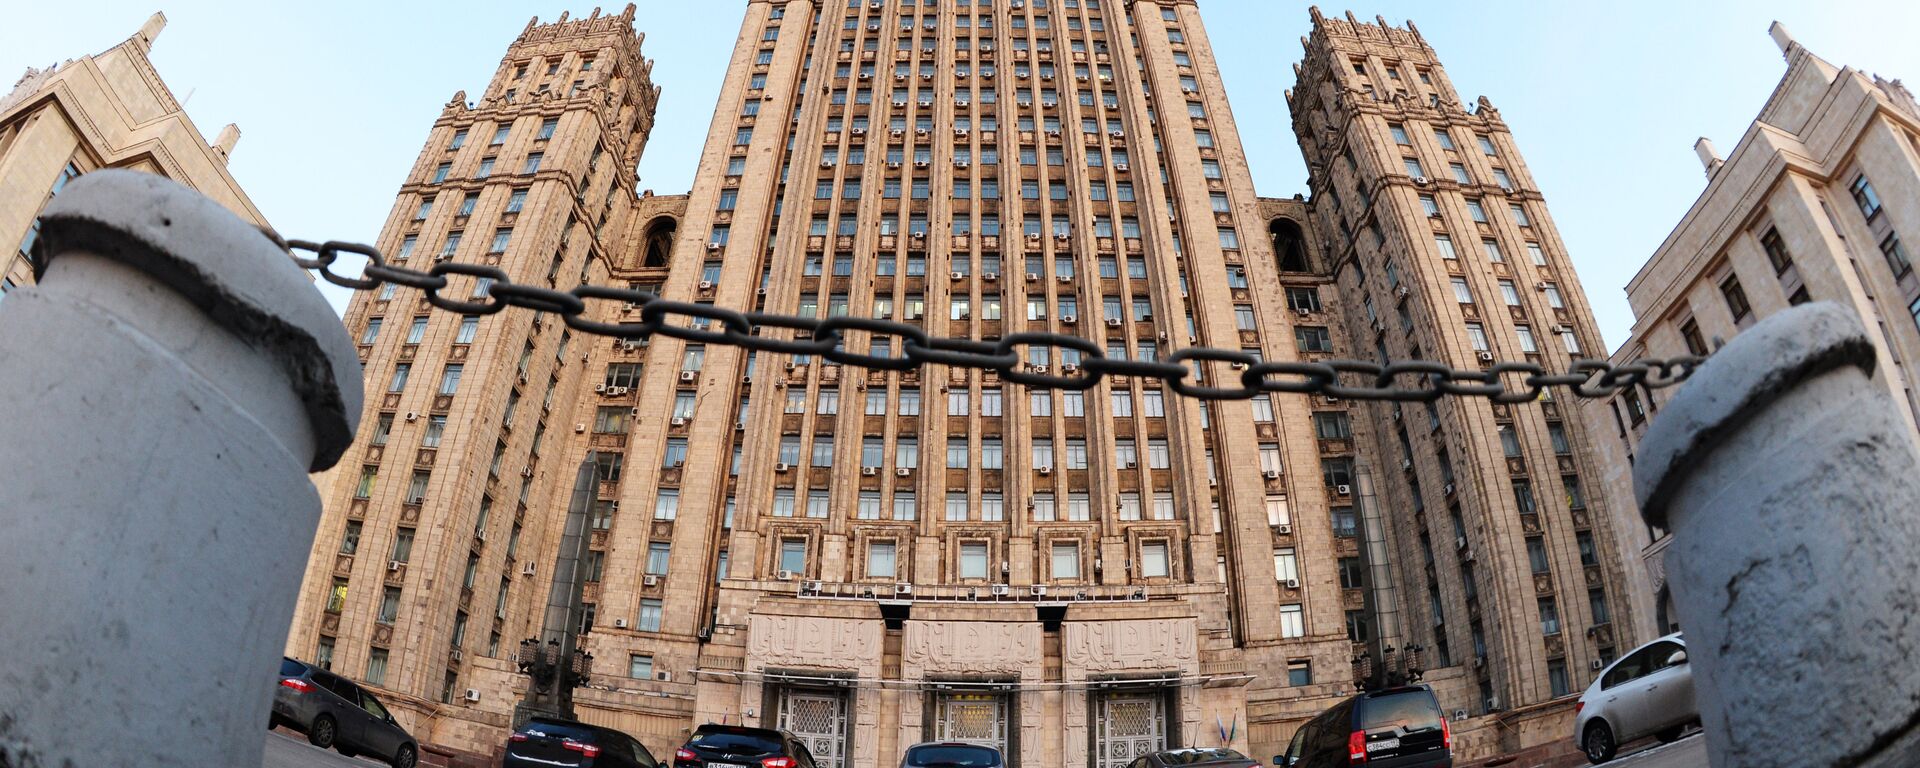 Zgrada Ministarstva spoljnih poslova Rusije u Moskvi - Sputnik Srbija, 1920, 01.12.2021